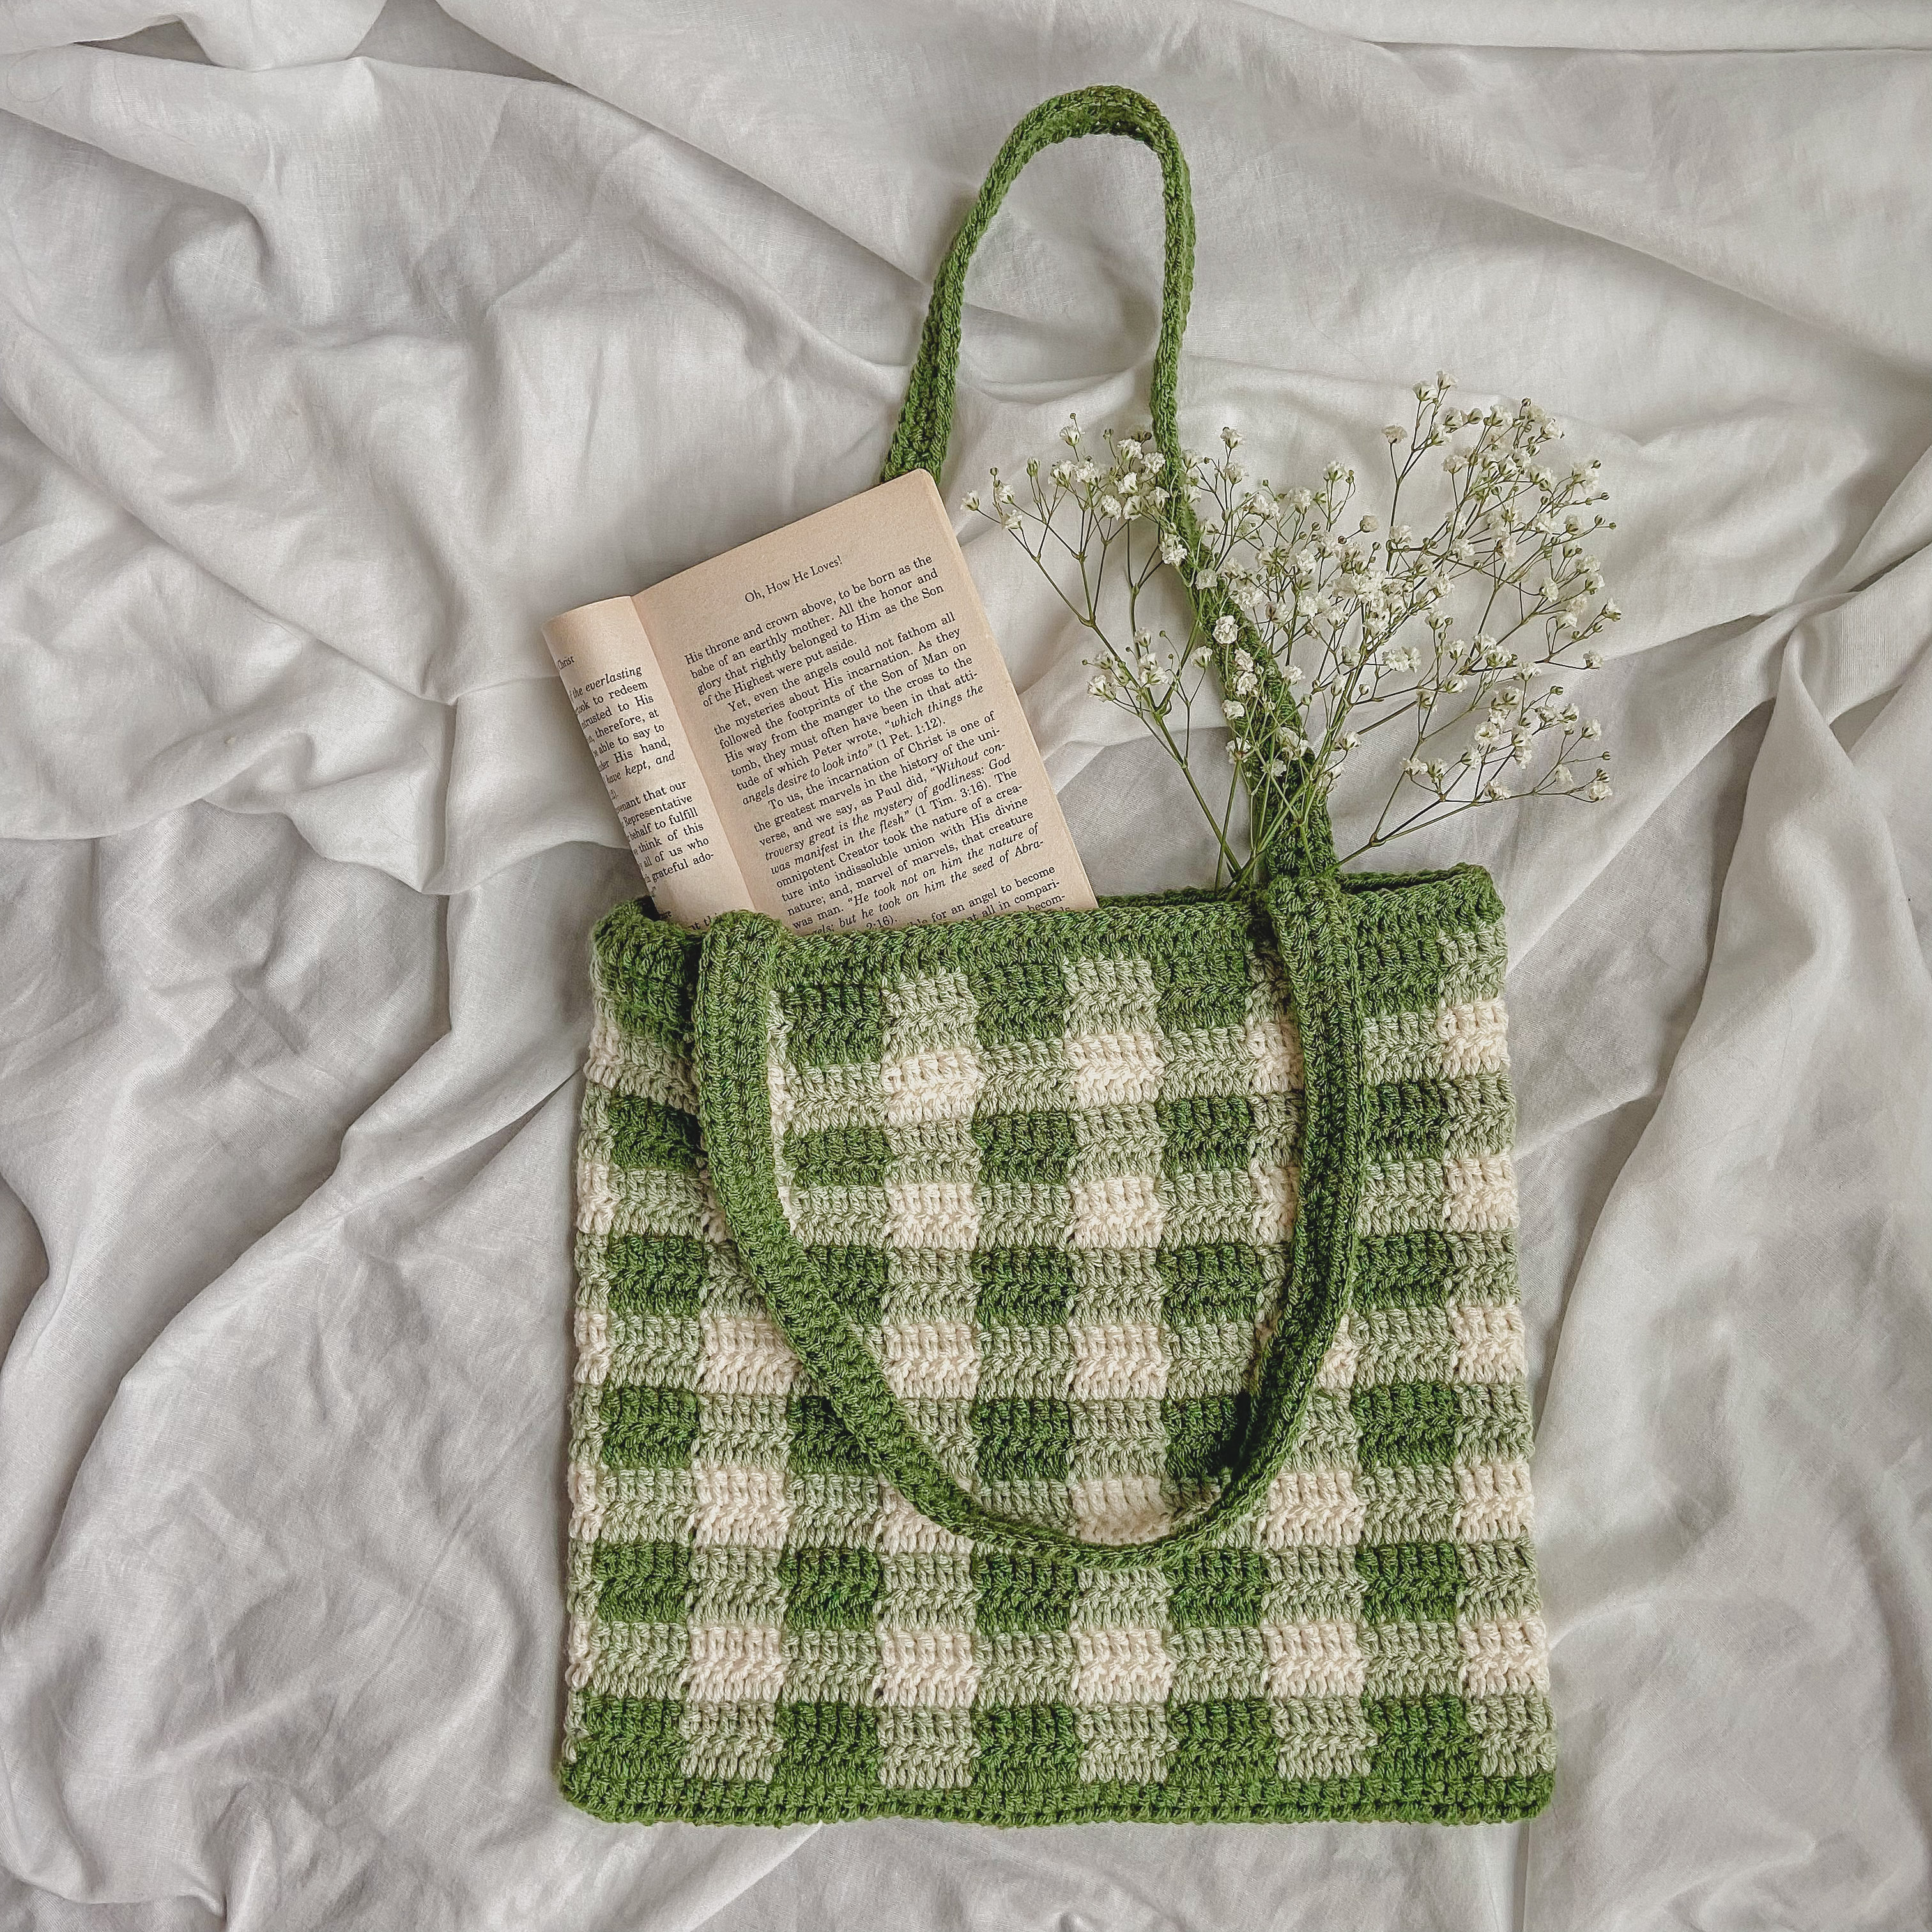 Crochet Women's Bag: Easy and Elegant Design